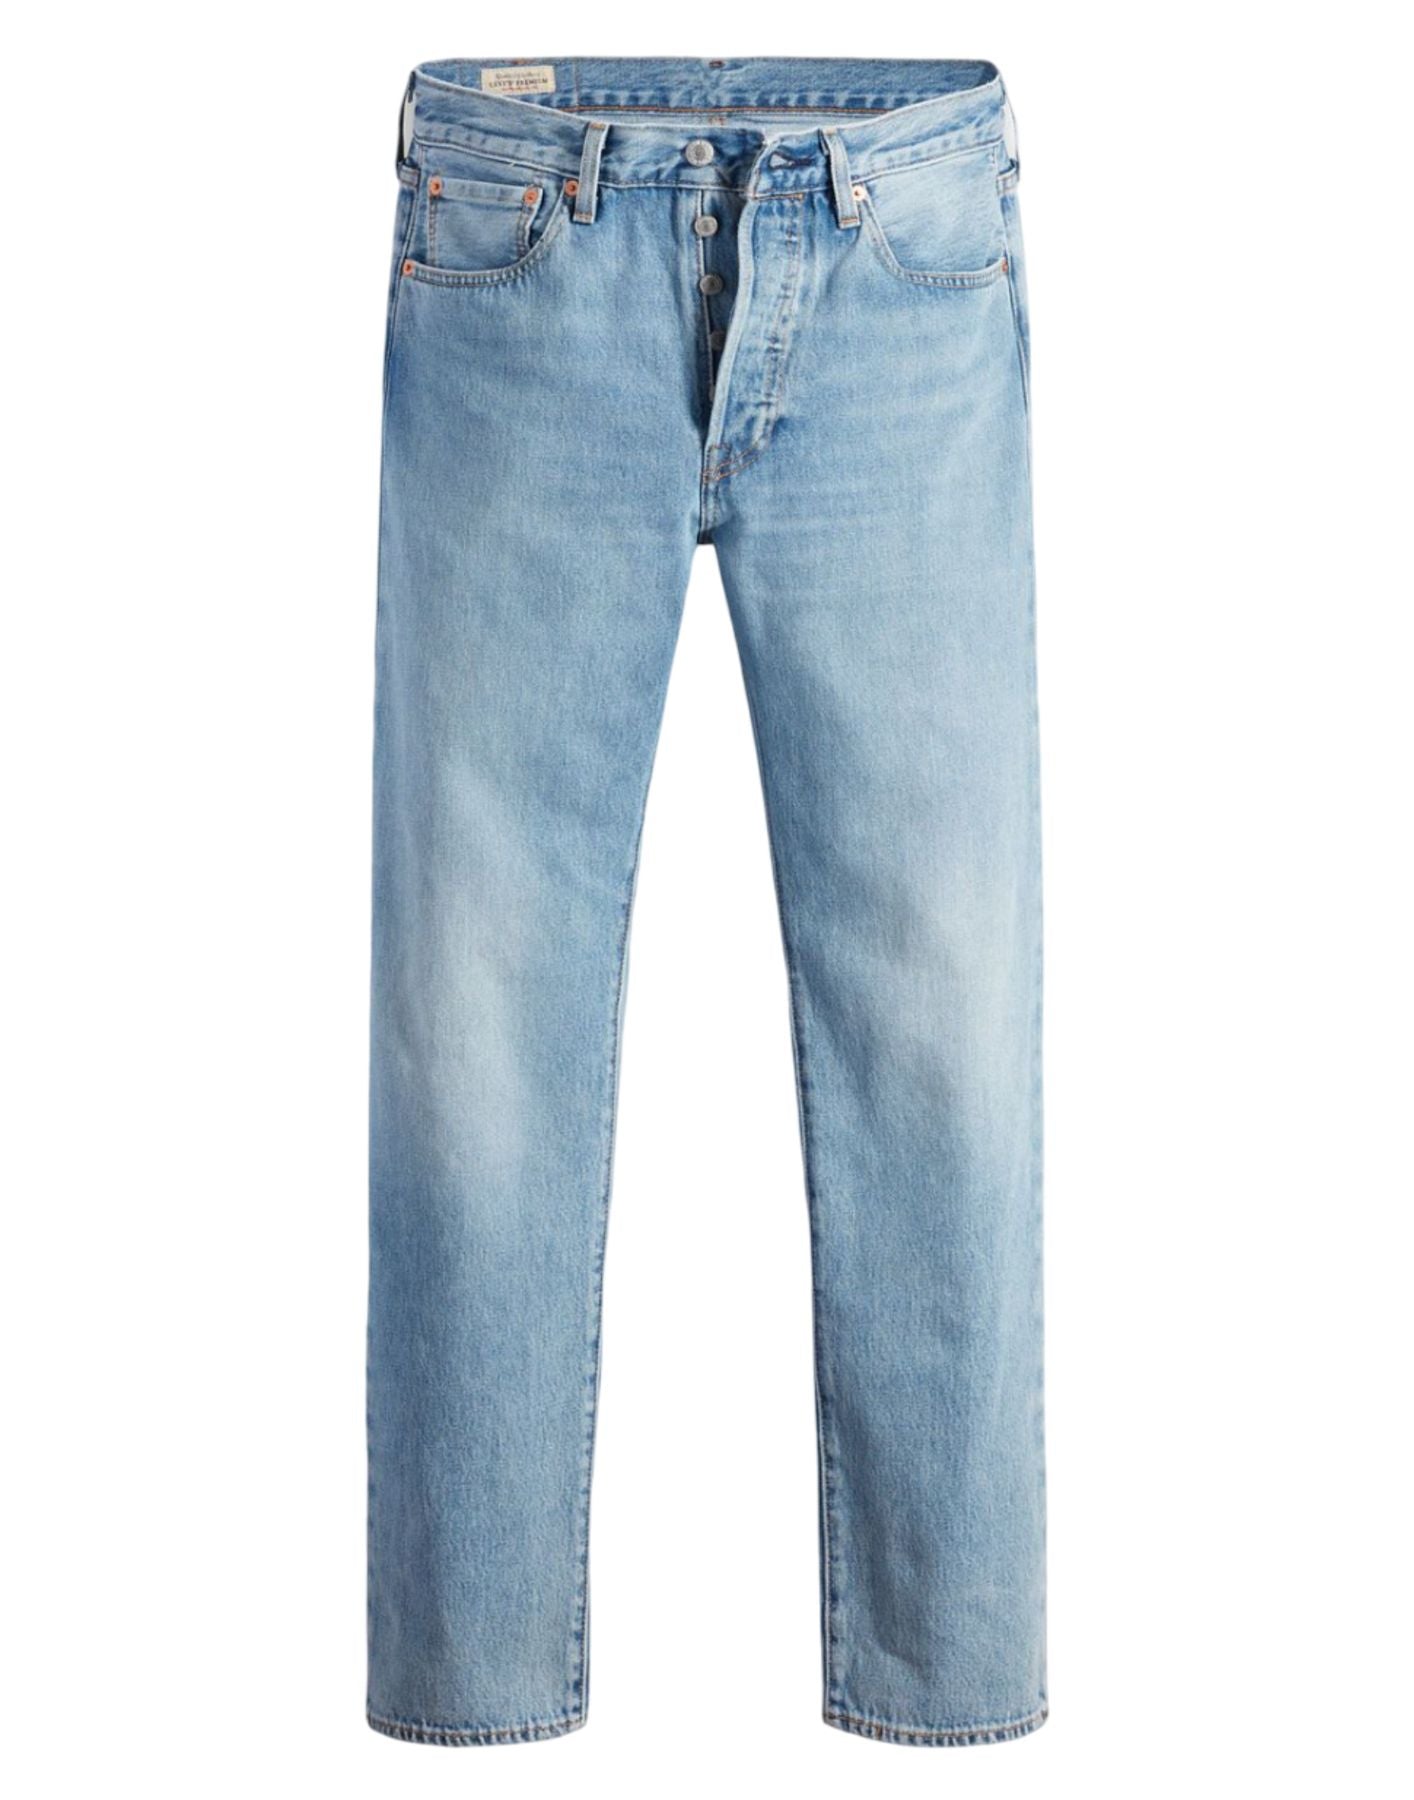 Jeans für Männer 00501 3410 blau Levi's